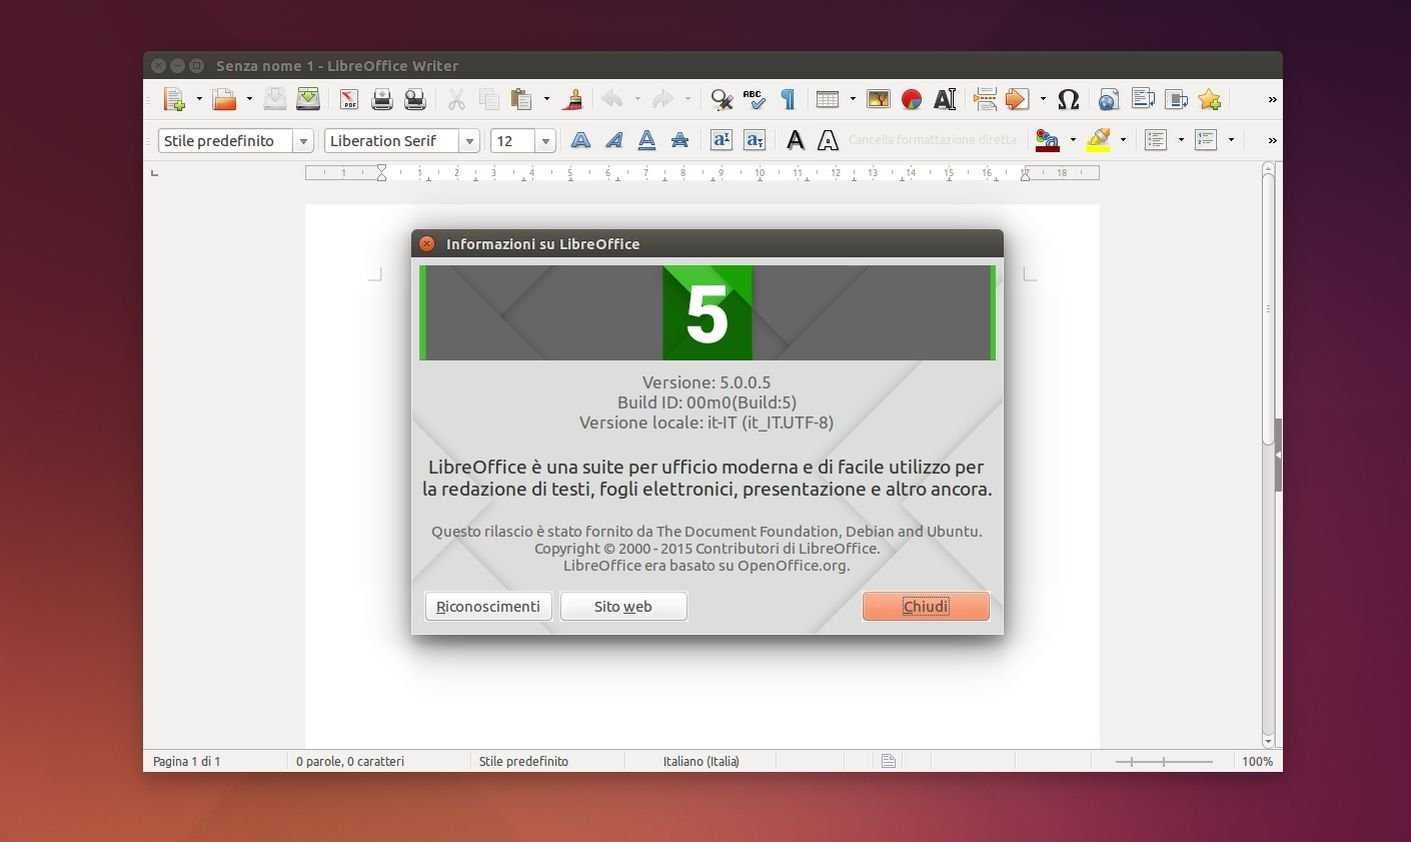 5 способов установки программ в ubuntu. пошаговые инструкции • игорь позняев